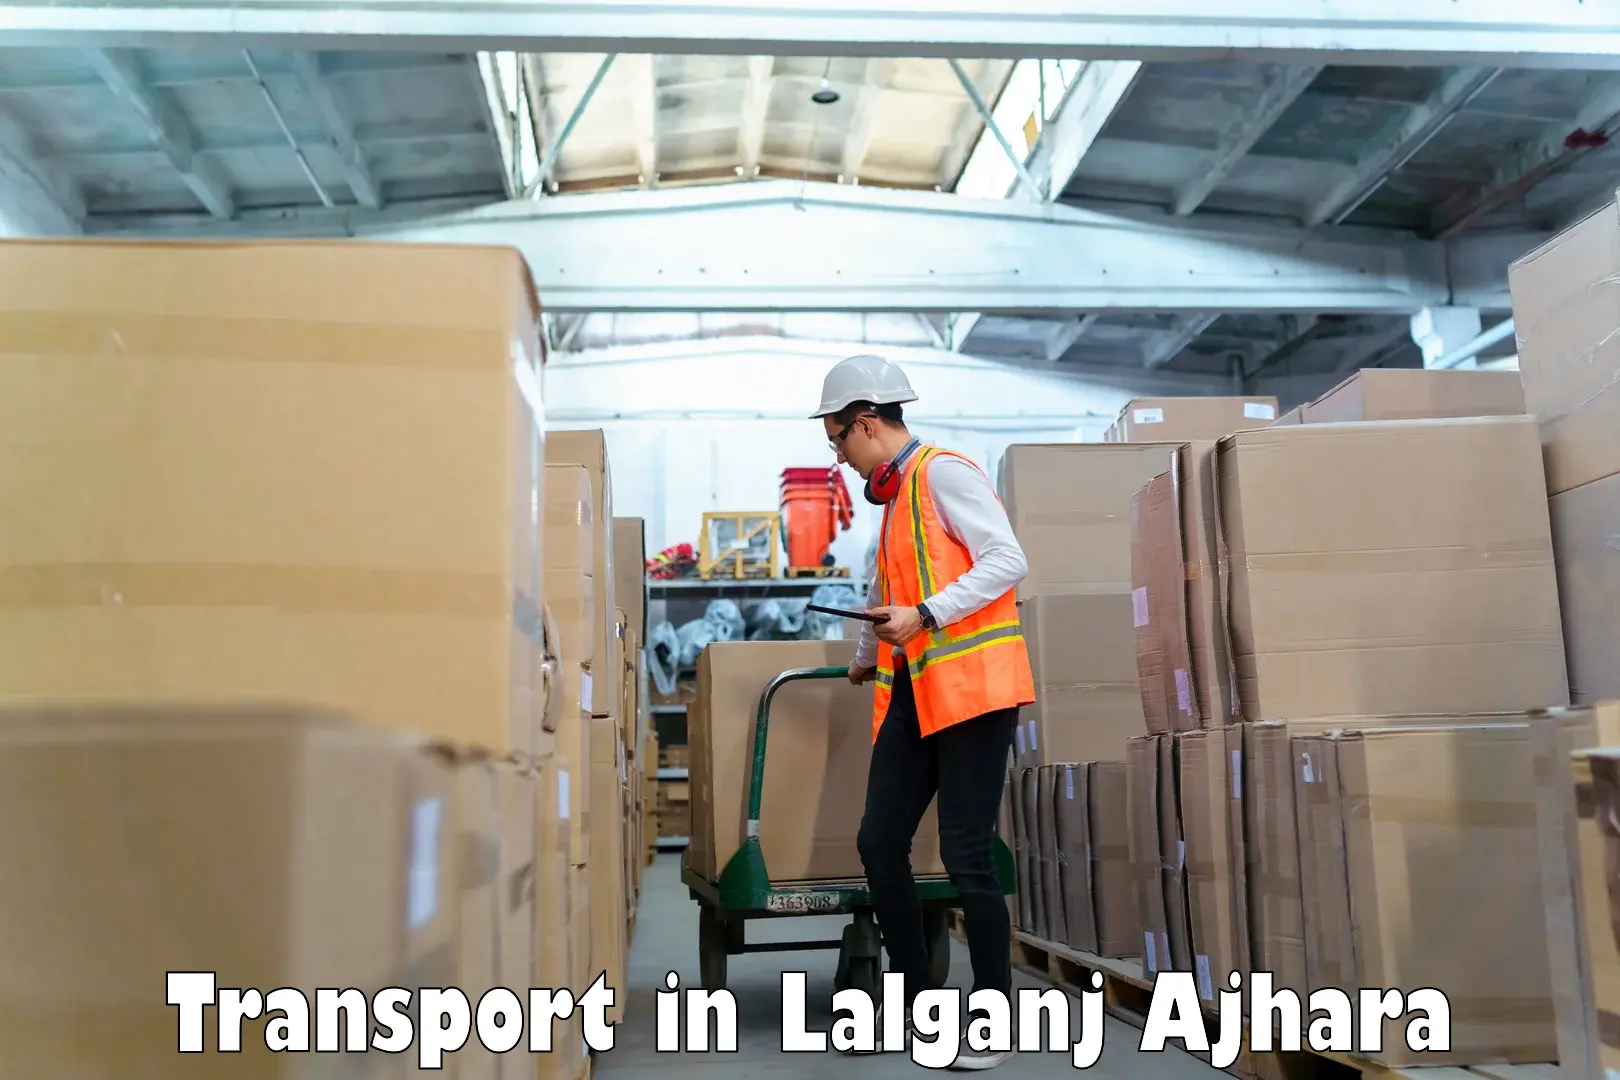 Commercial transport service in Lalganj Ajhara